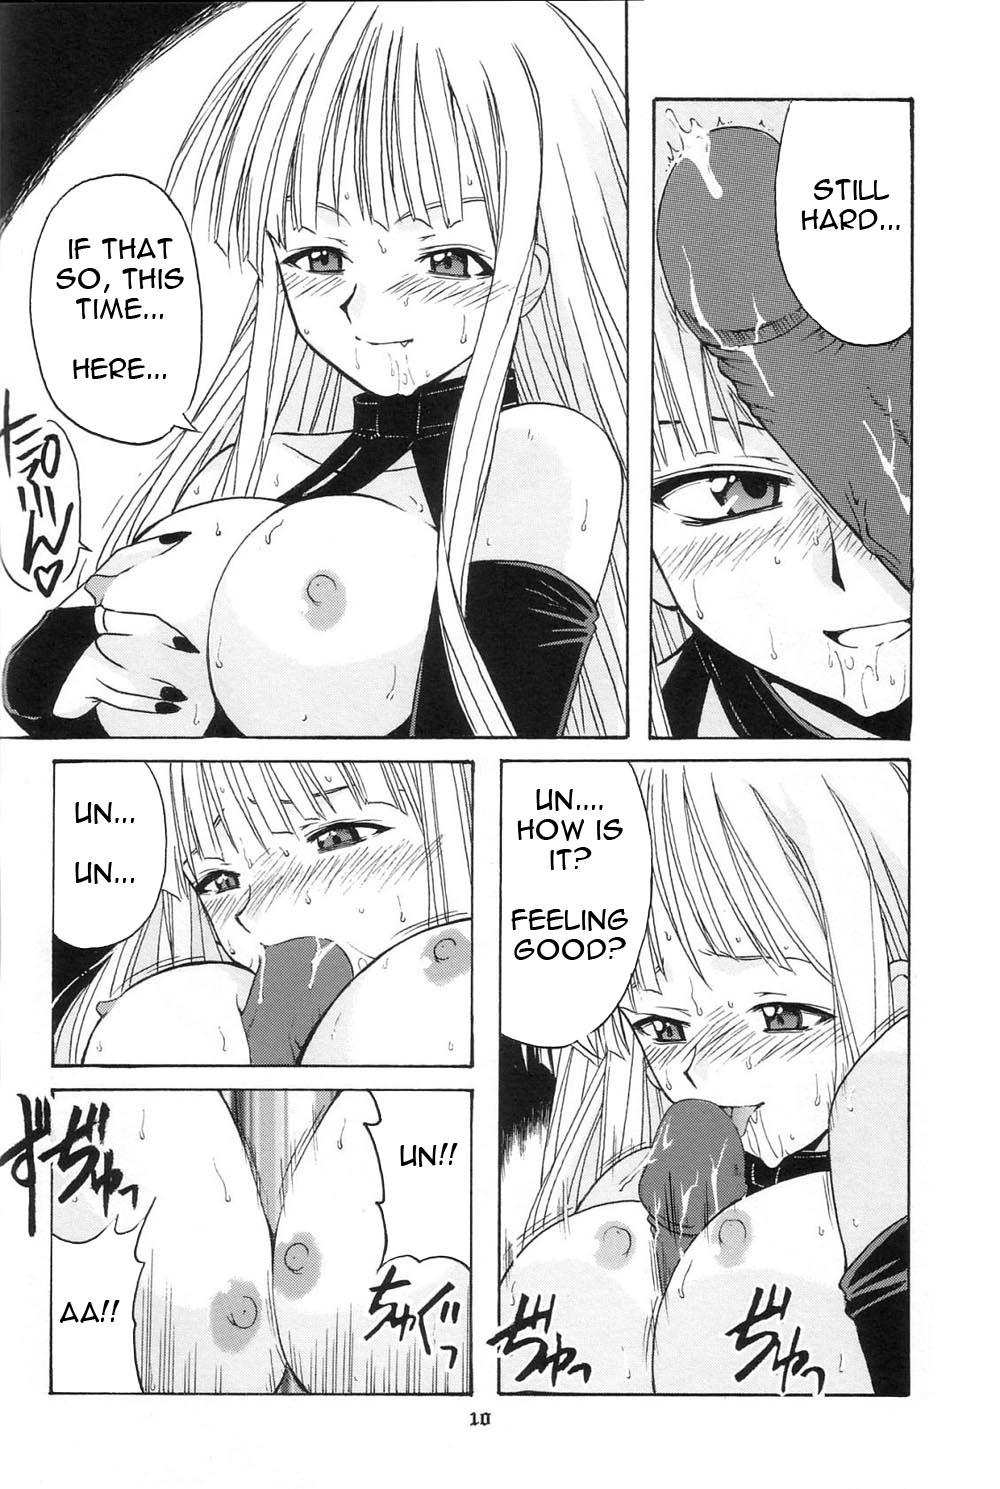 Big Ass if CODE 01 Evangeline - Mahou sensei negima Foursome - Page 10